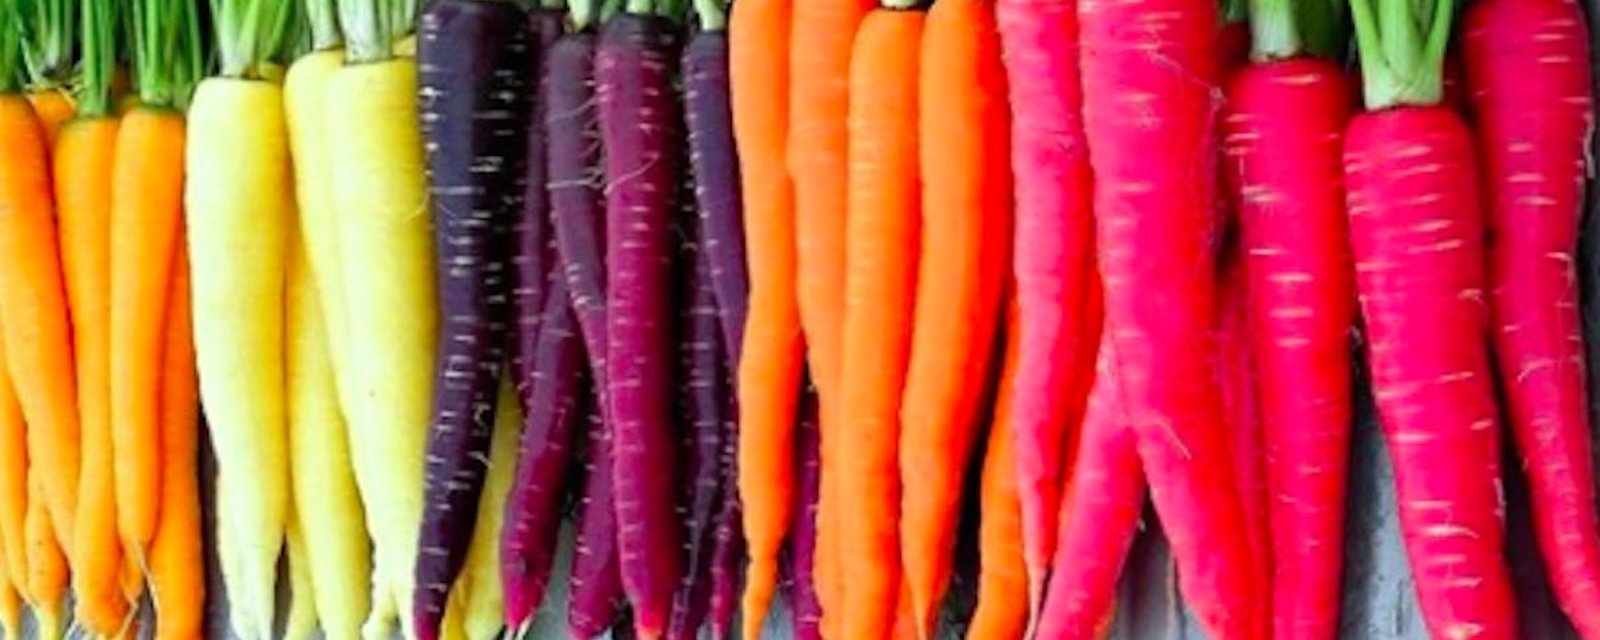 Les carottes arc-en-ciel aux couleurs vives sont la nouvelle tendance  jardinage 